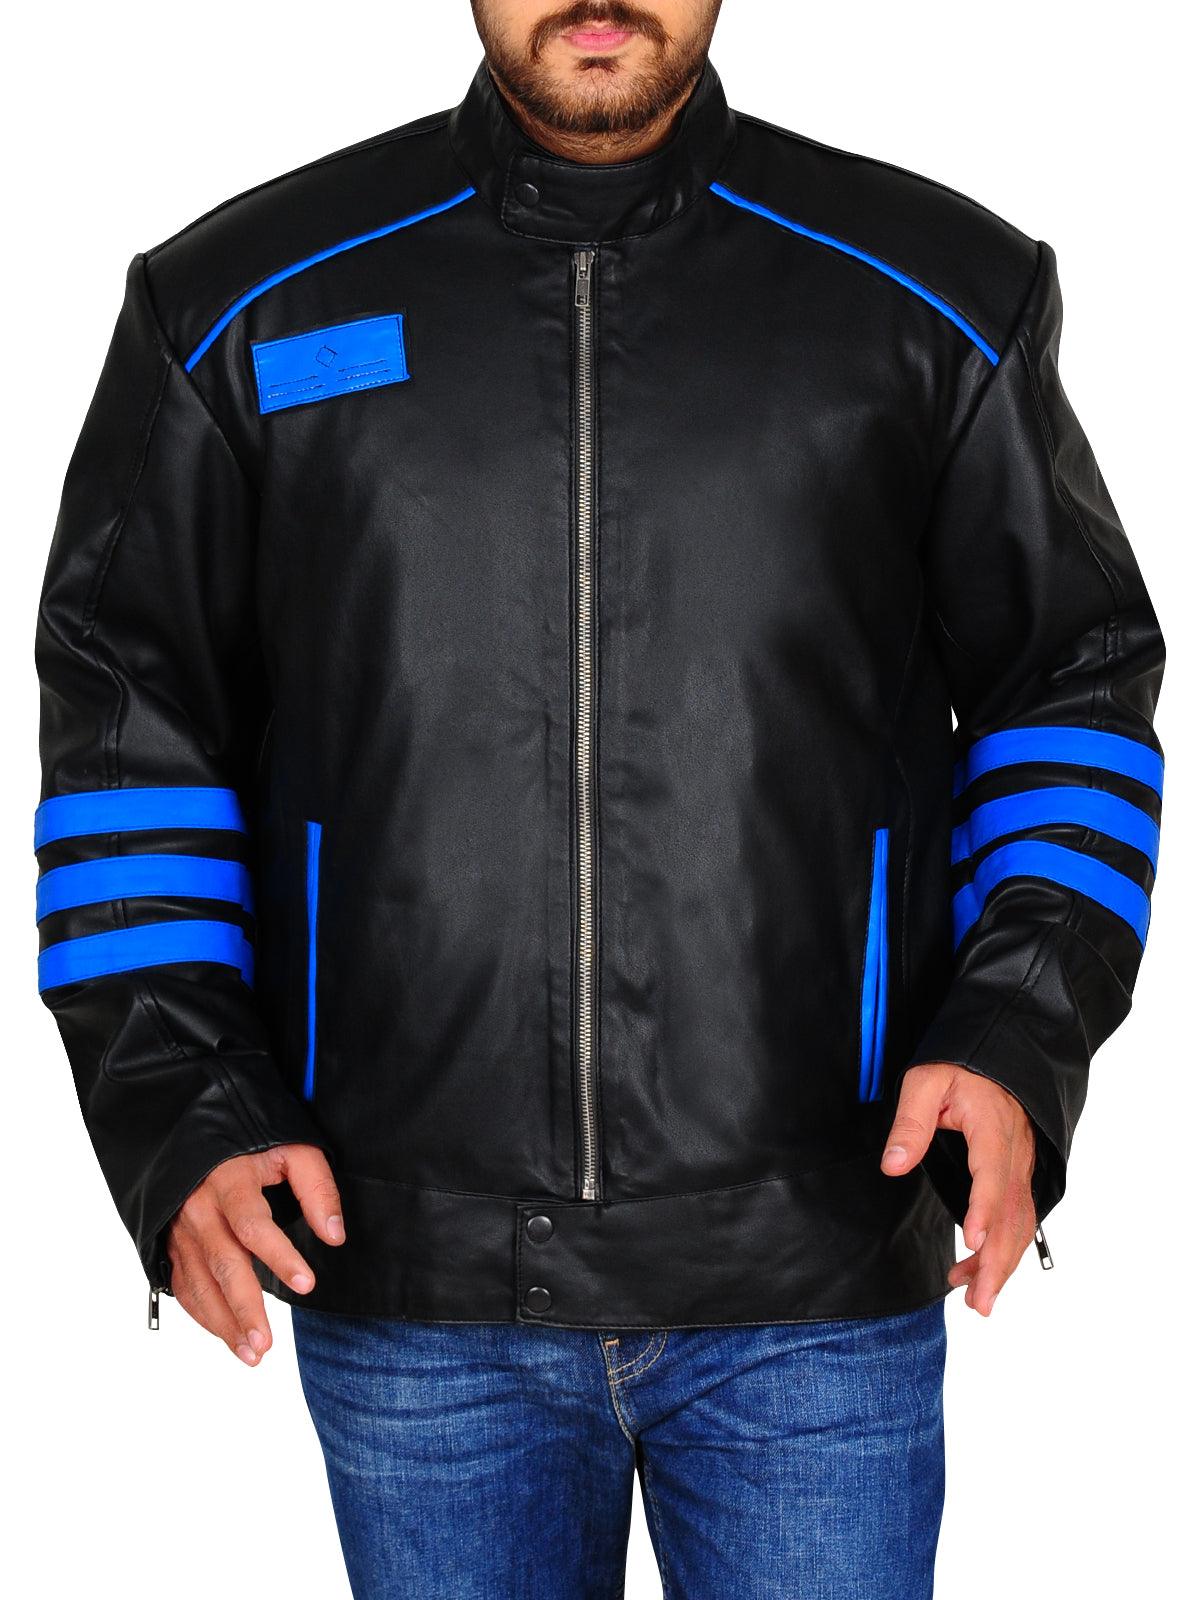 Men's Blue & Black Biker Leather Jacket